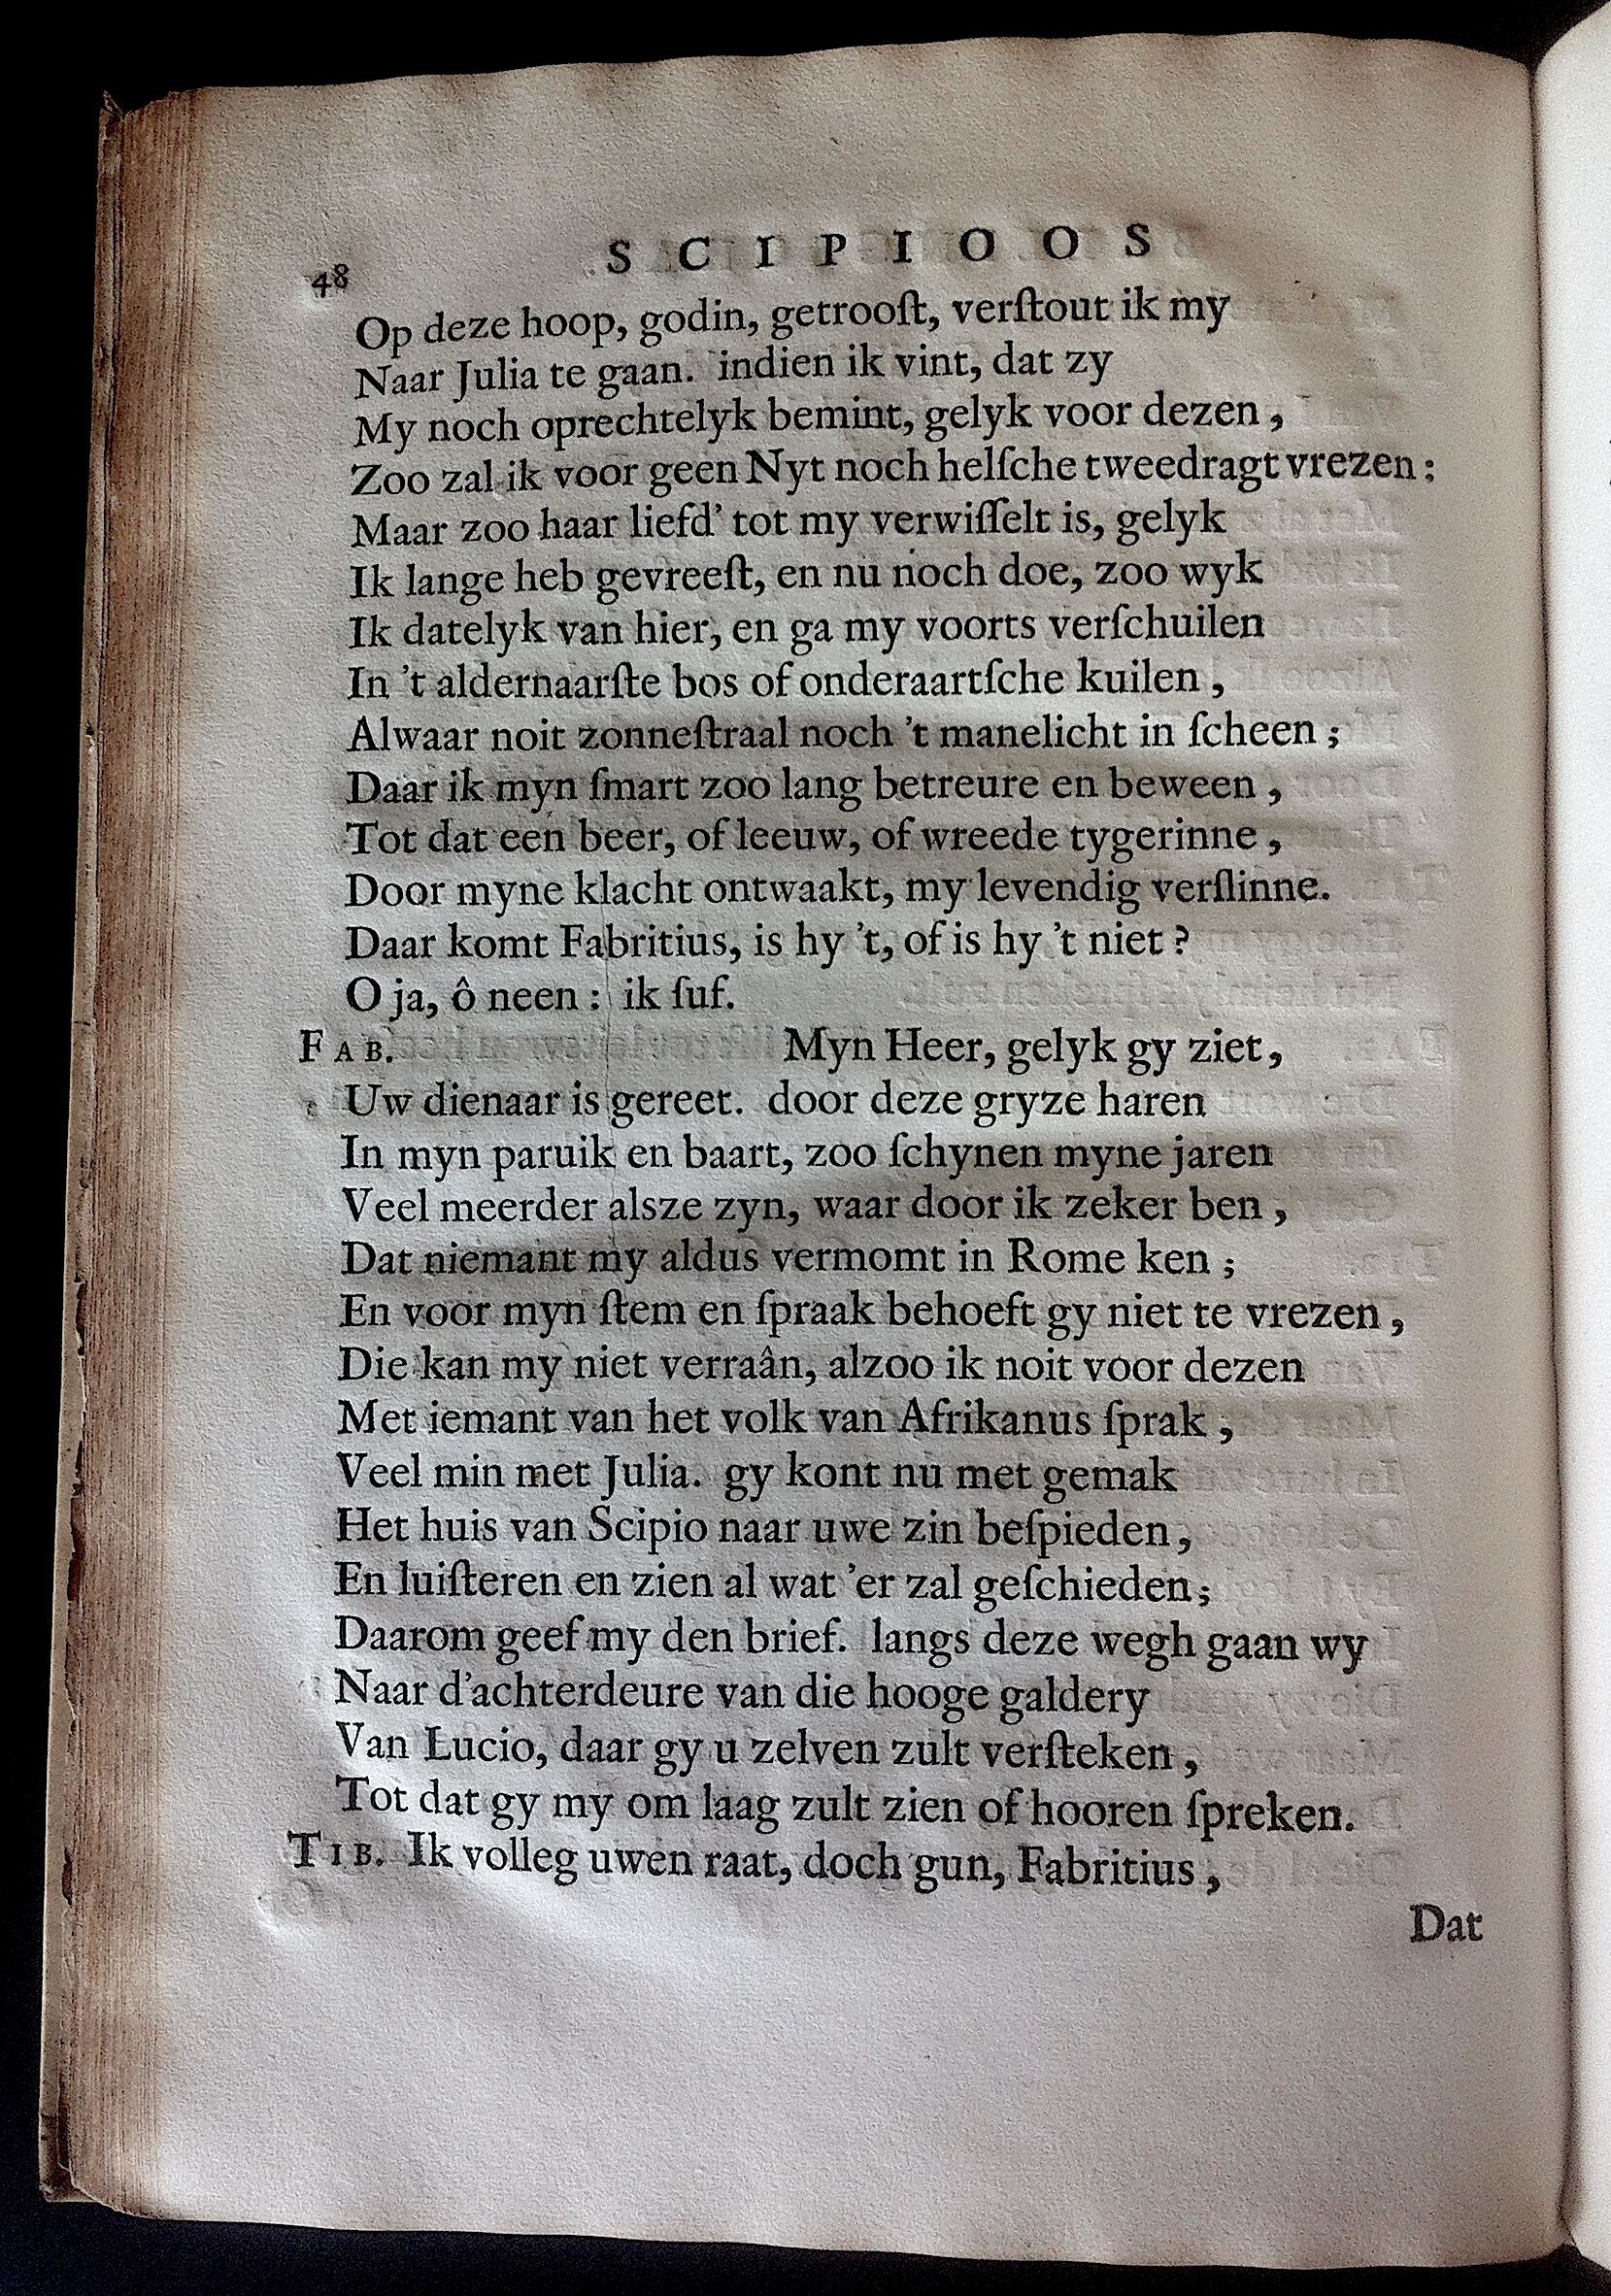 BoccardScipioFolio1658p48